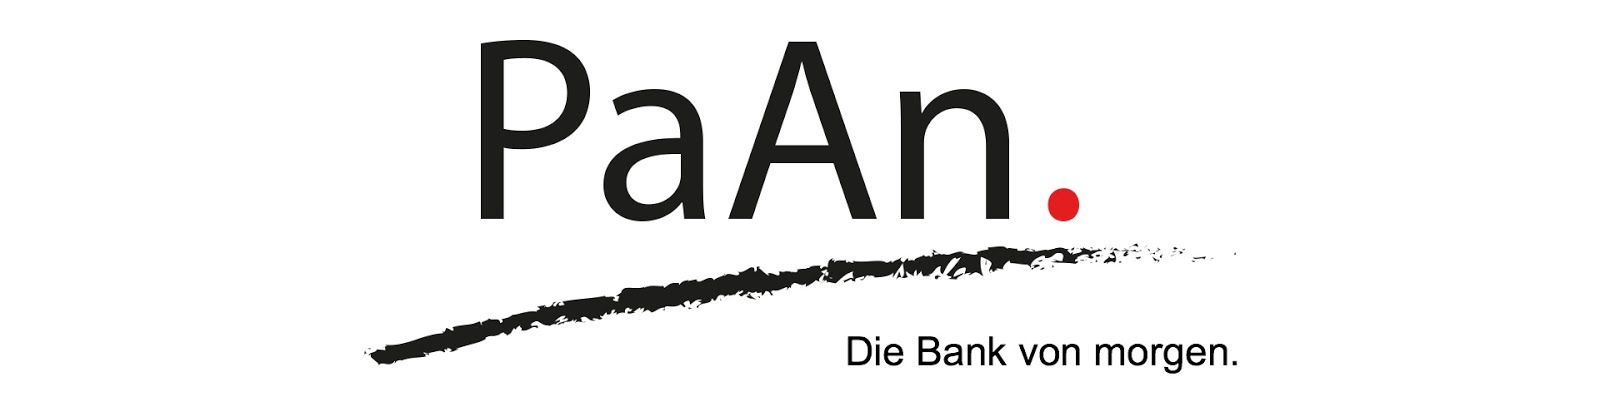 PaAn - Die Bank von morgen